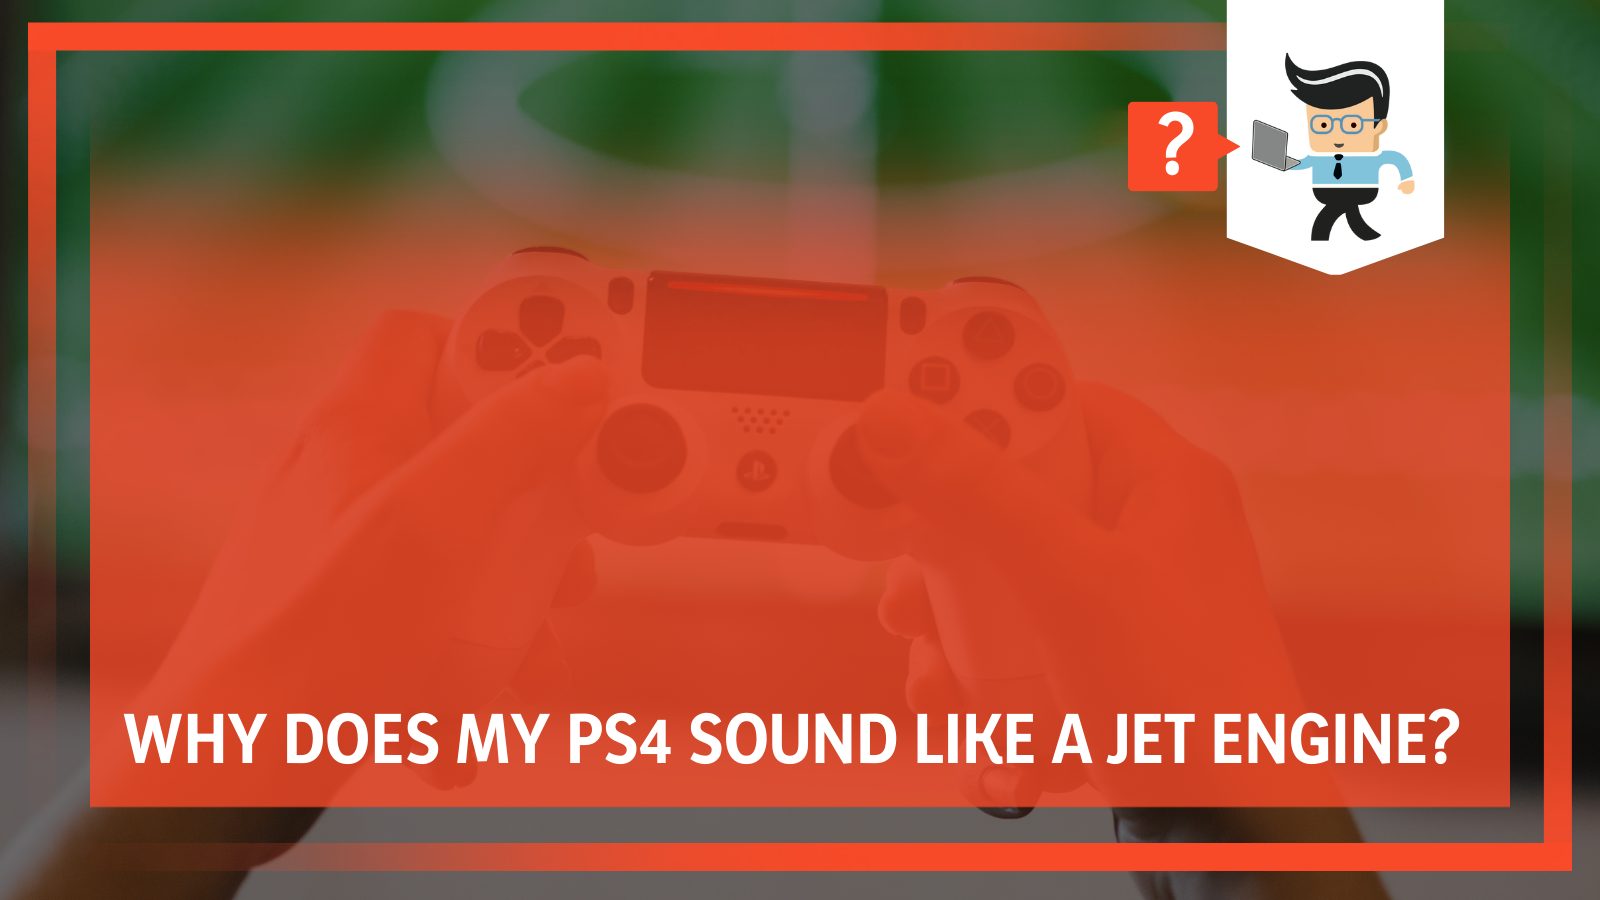 PS4 Sound Like a Jet Engine